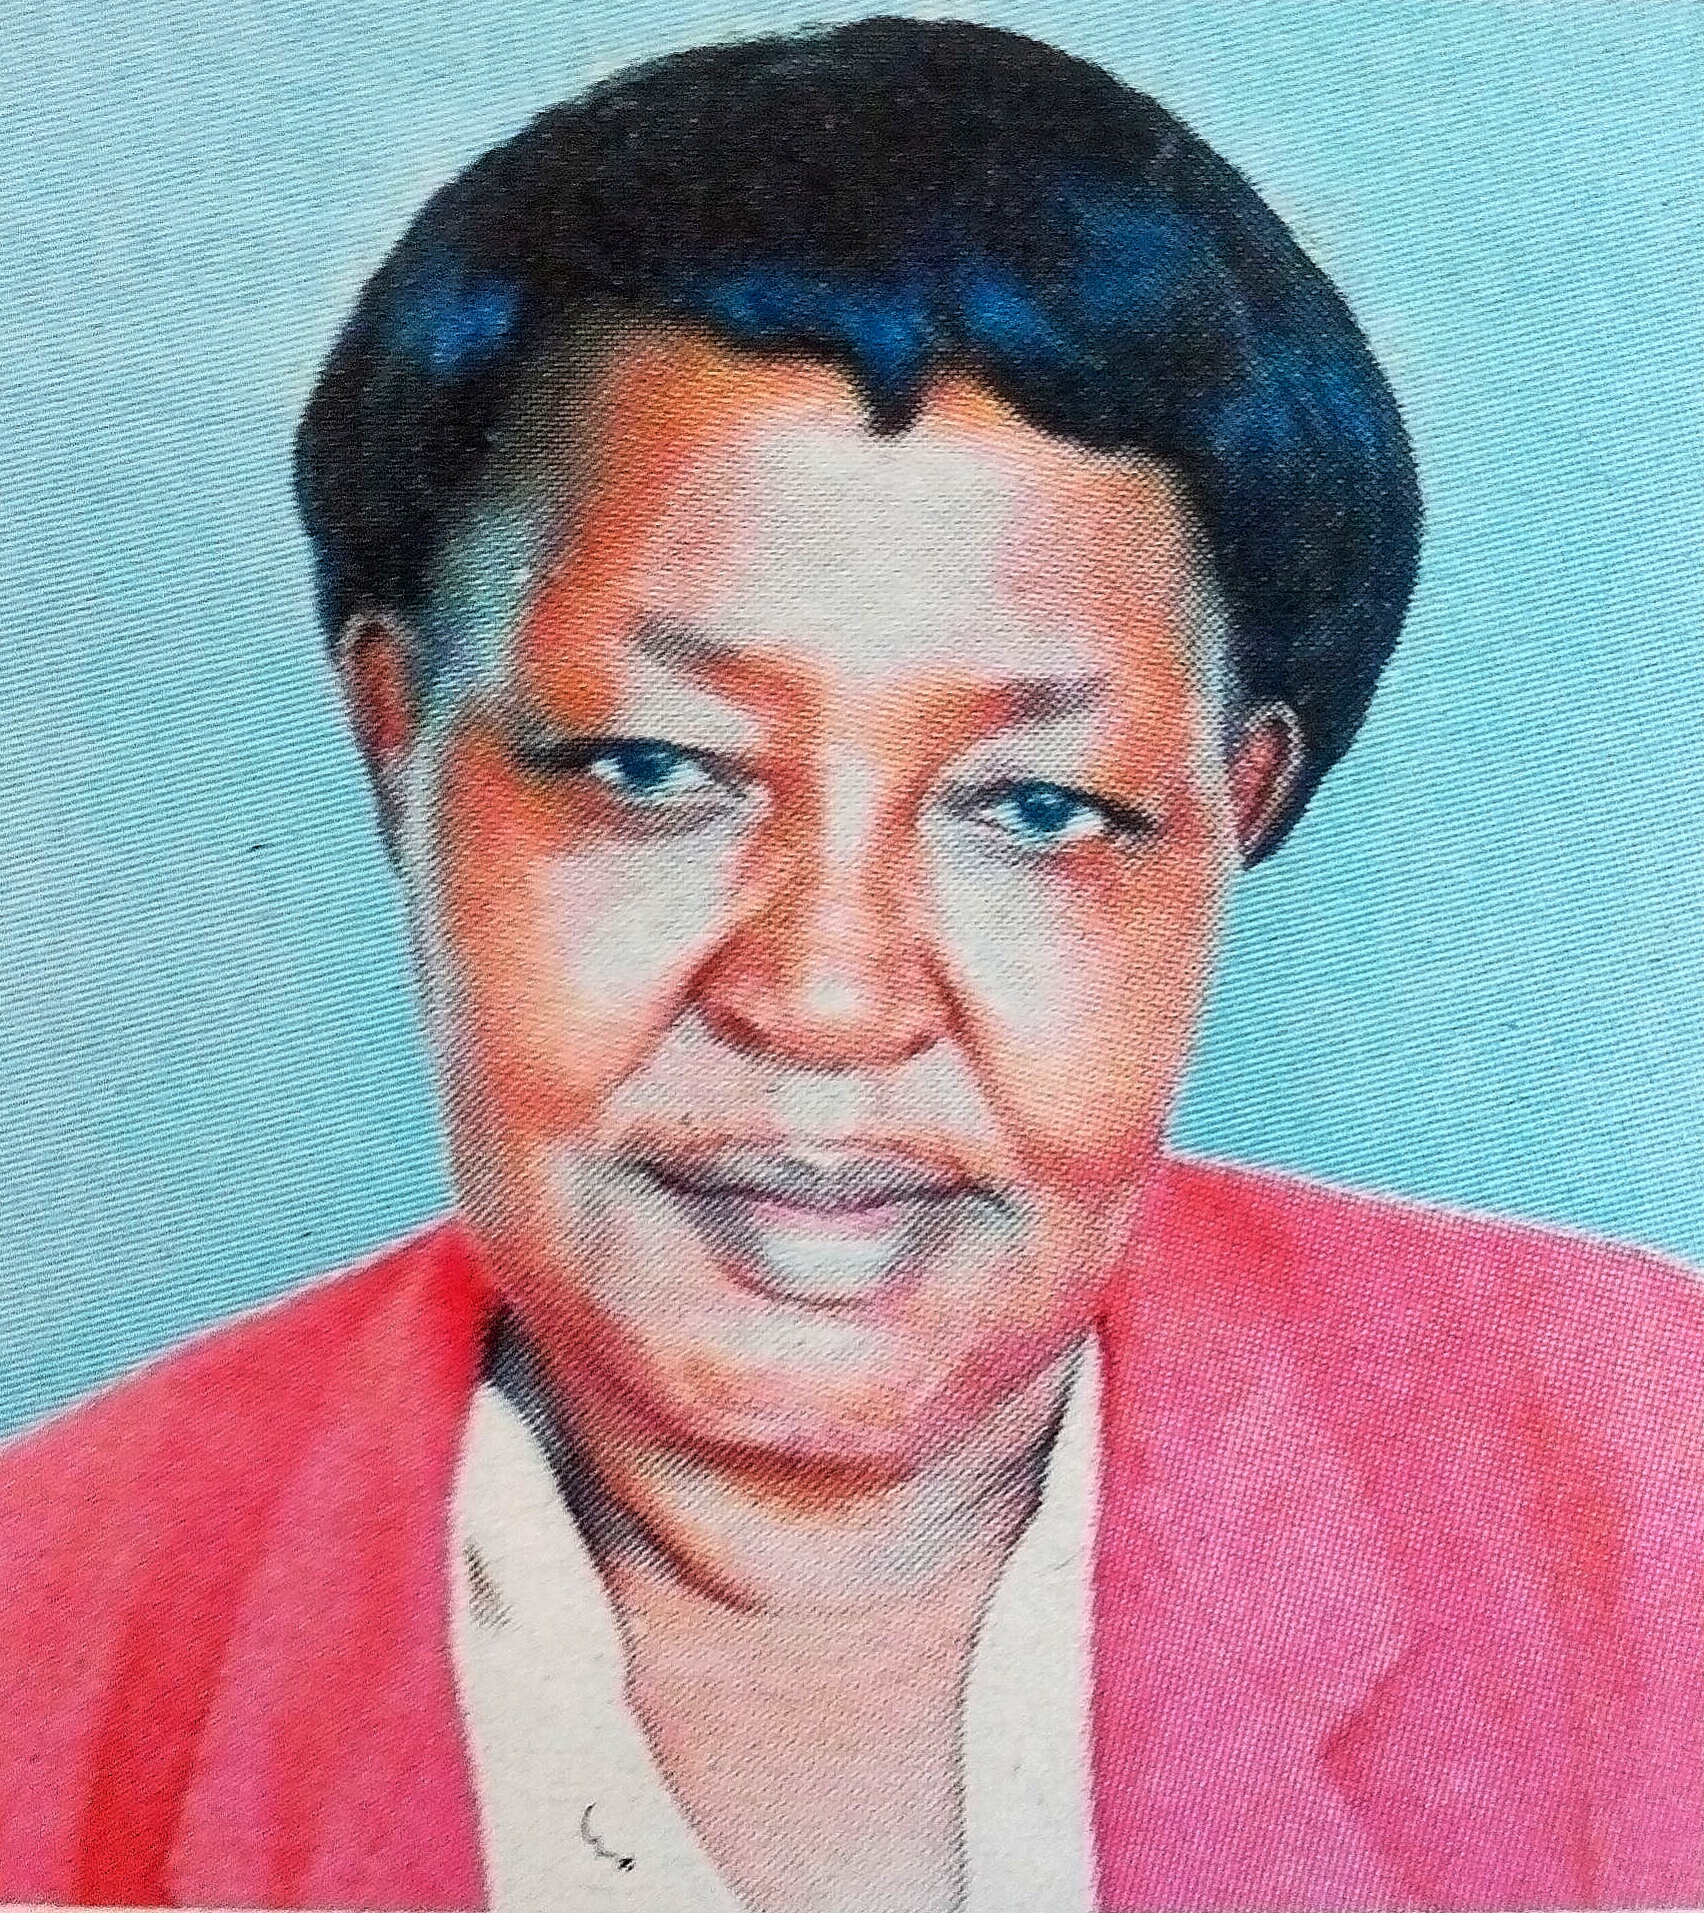 Obituary Image of jane Njambi Gachuhi